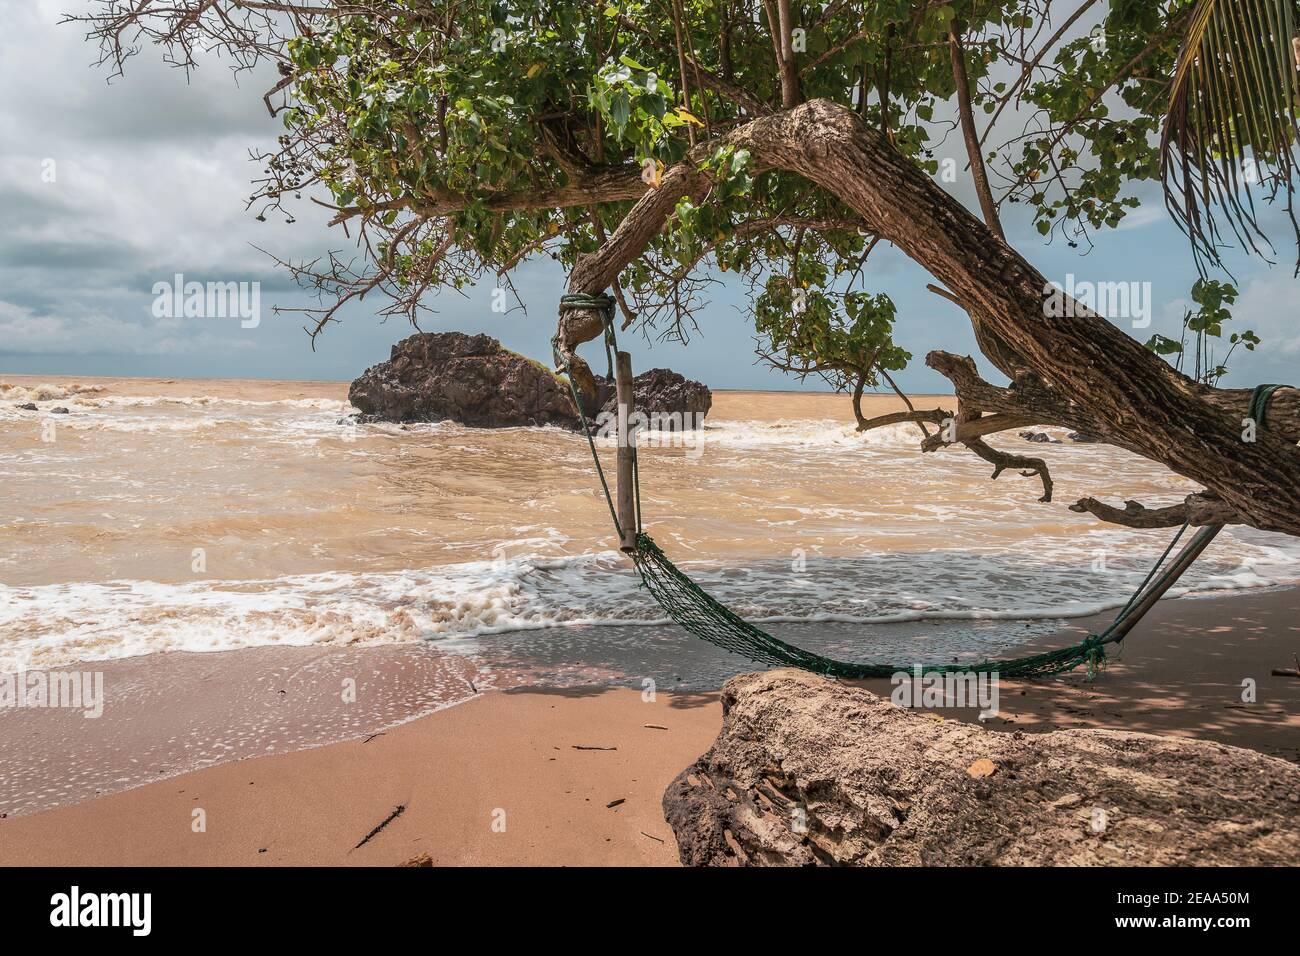 An abandoned hammock on an empty beach in Axim Ghana West Africa. Stock Photo